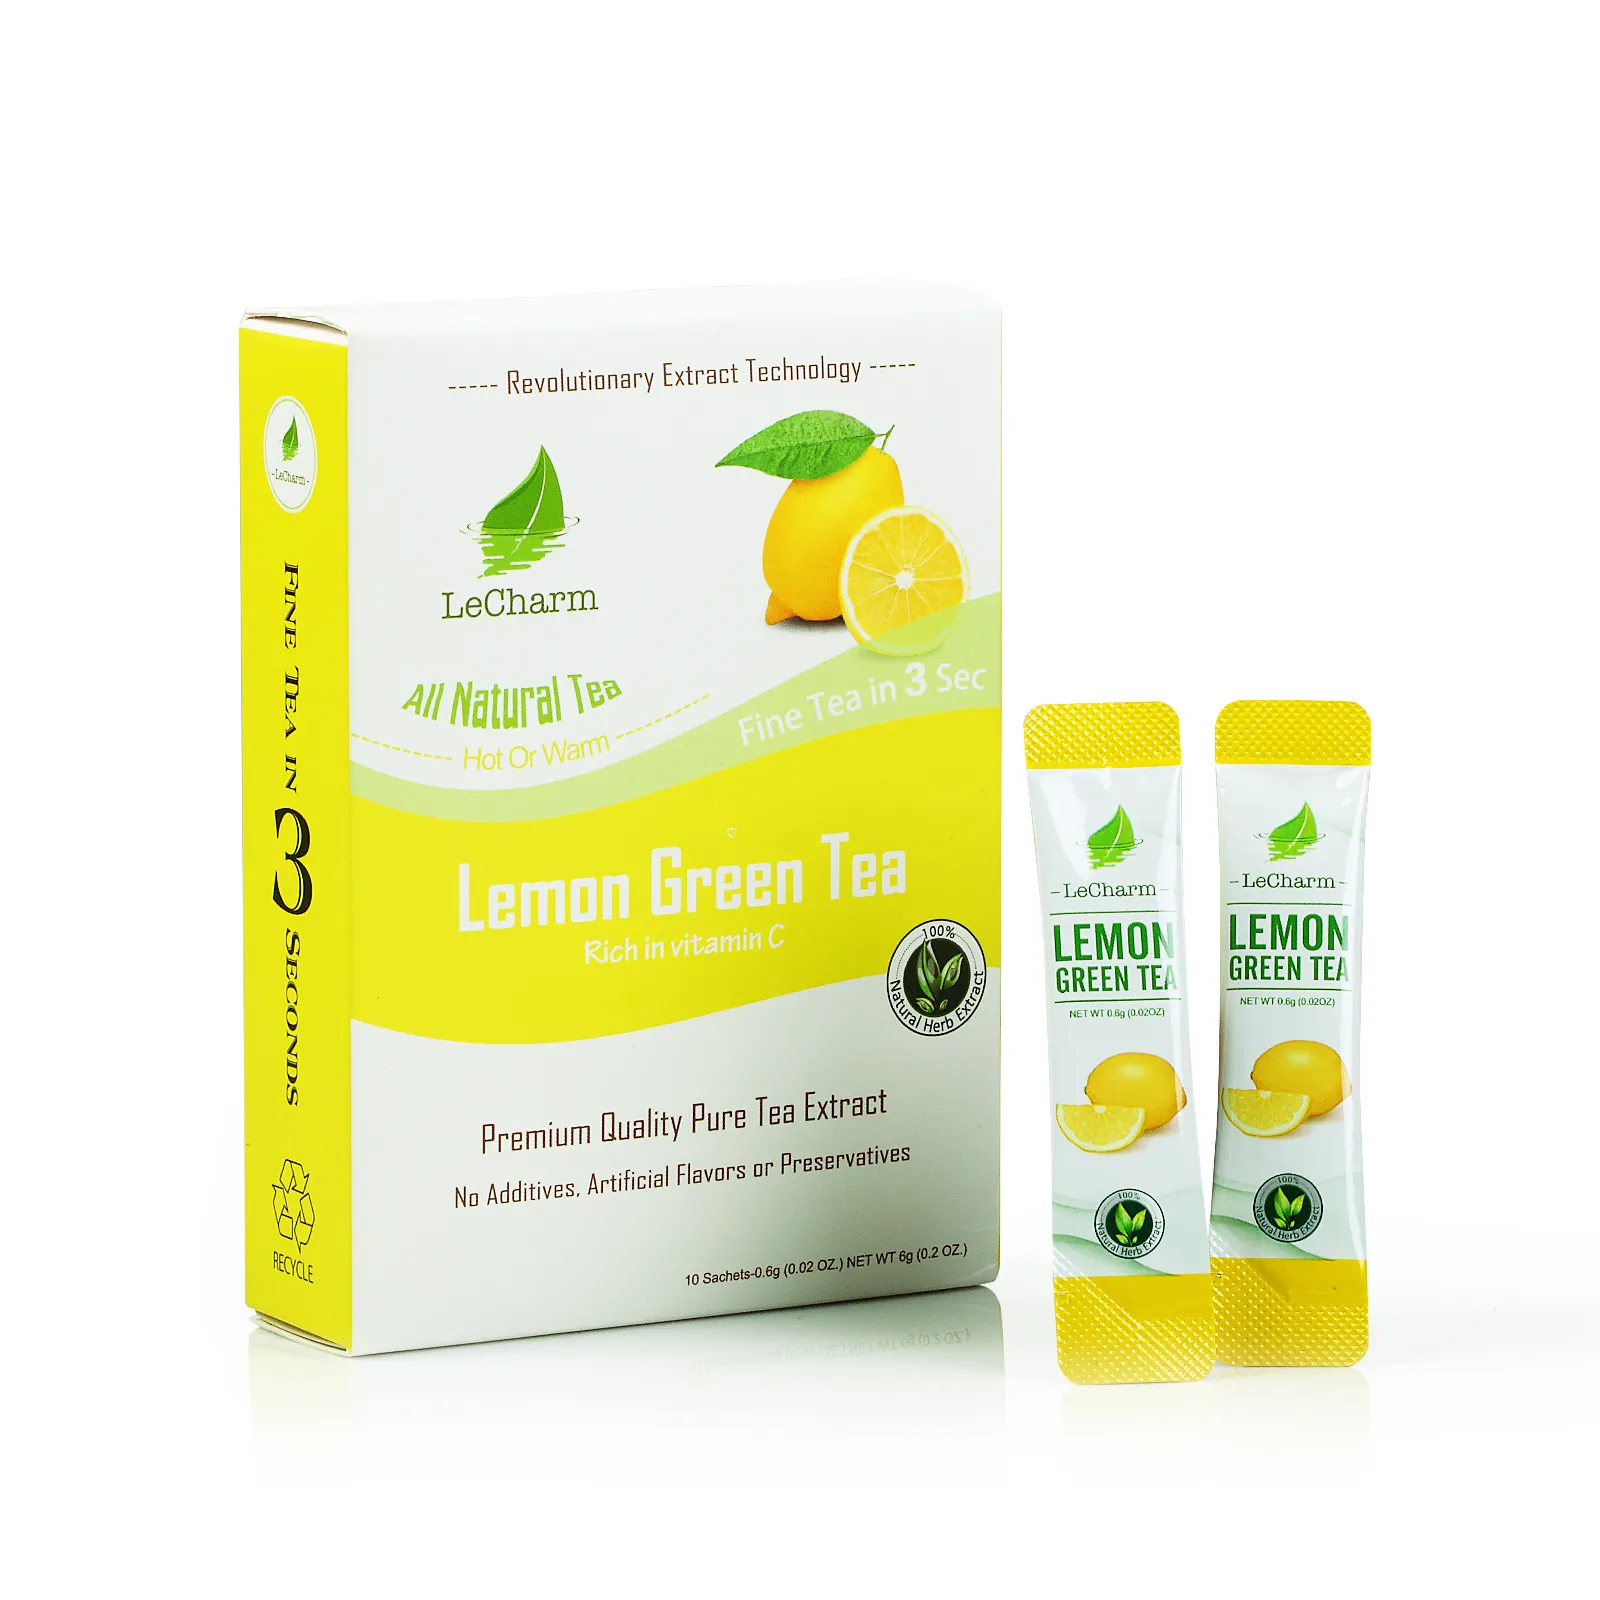 Kostenlose Probe und Annahme Sonder anfertigung Easy Slim Fruit Tea Powder zur Gewichts reduktion